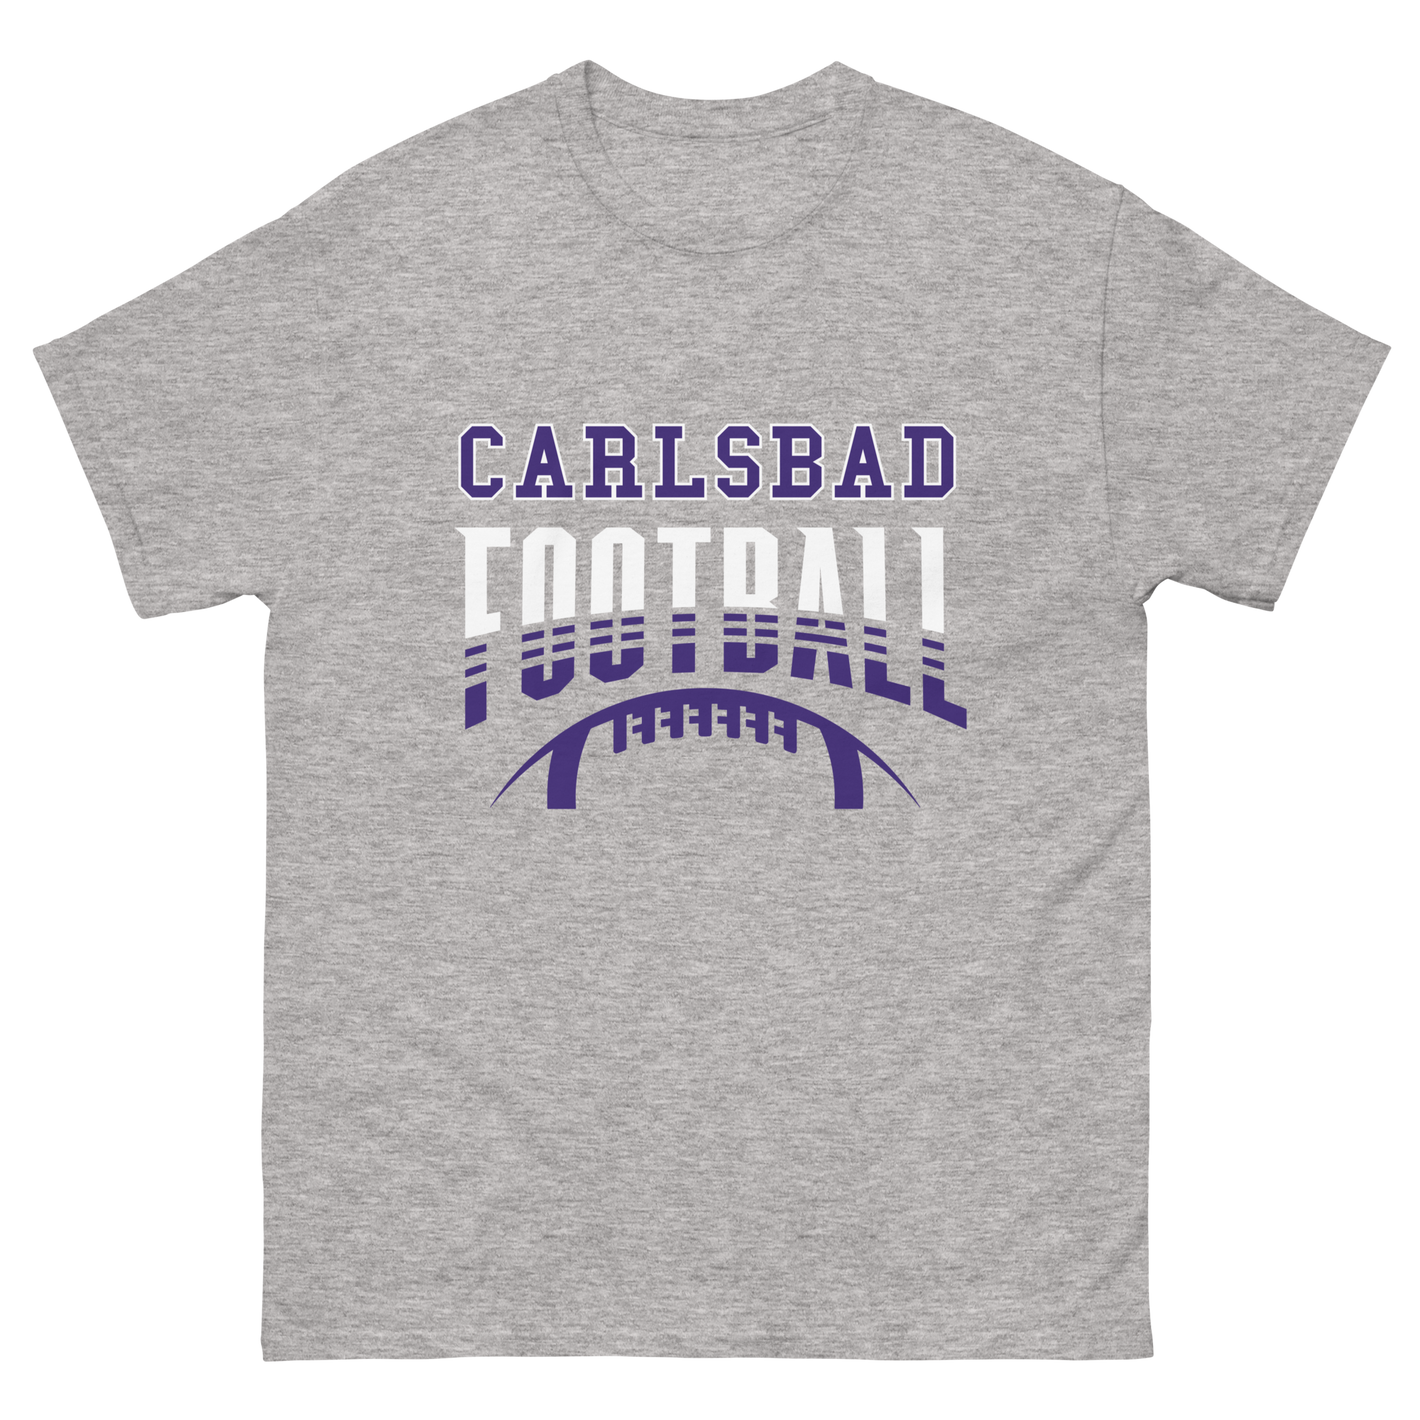 Carlsbad Football classic tee